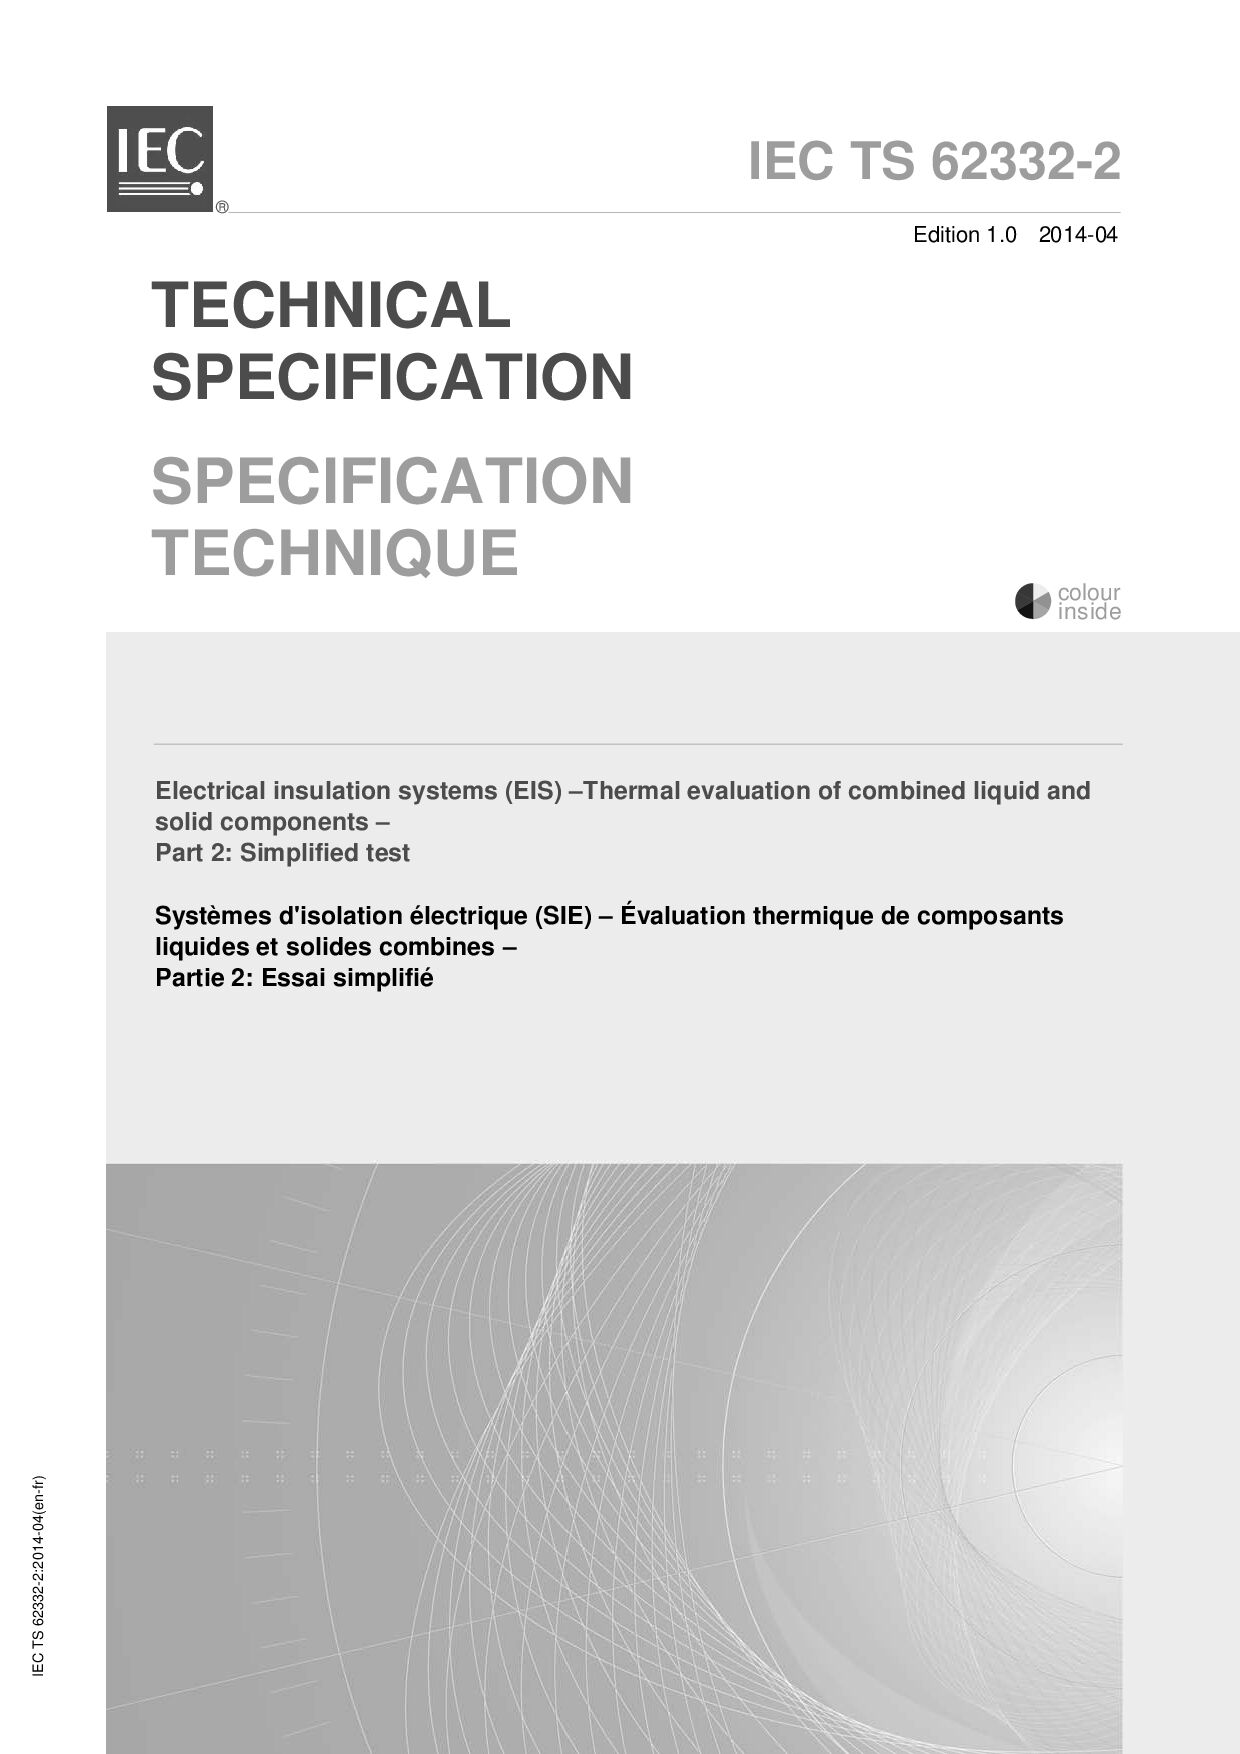 IEC TS 62332-2:2014